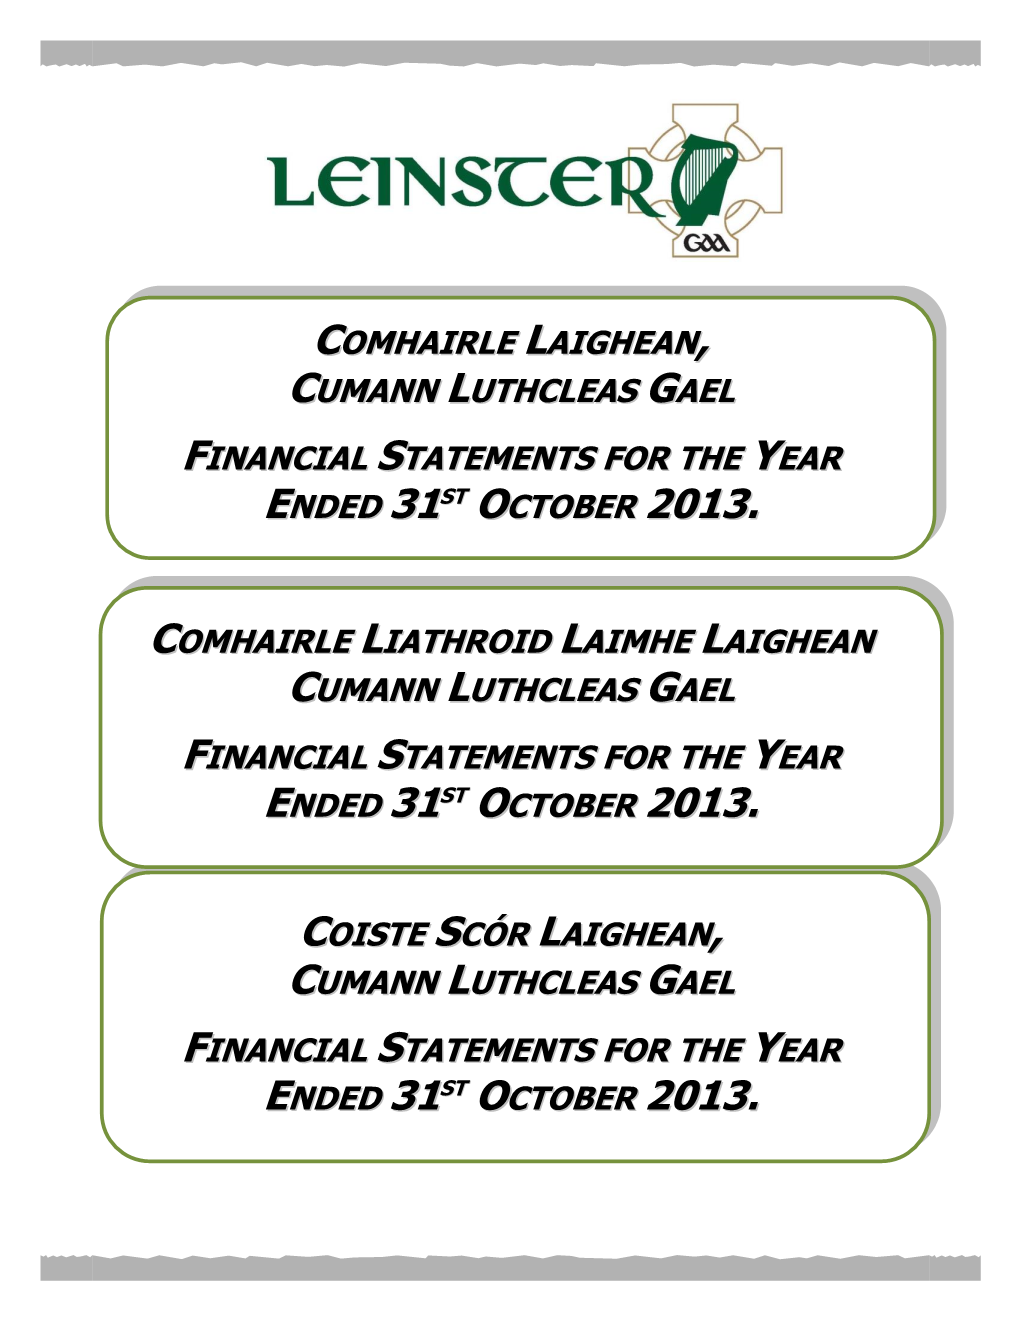 Comhairle Laighean Cumann Luthcleas Gael Financial Statements For